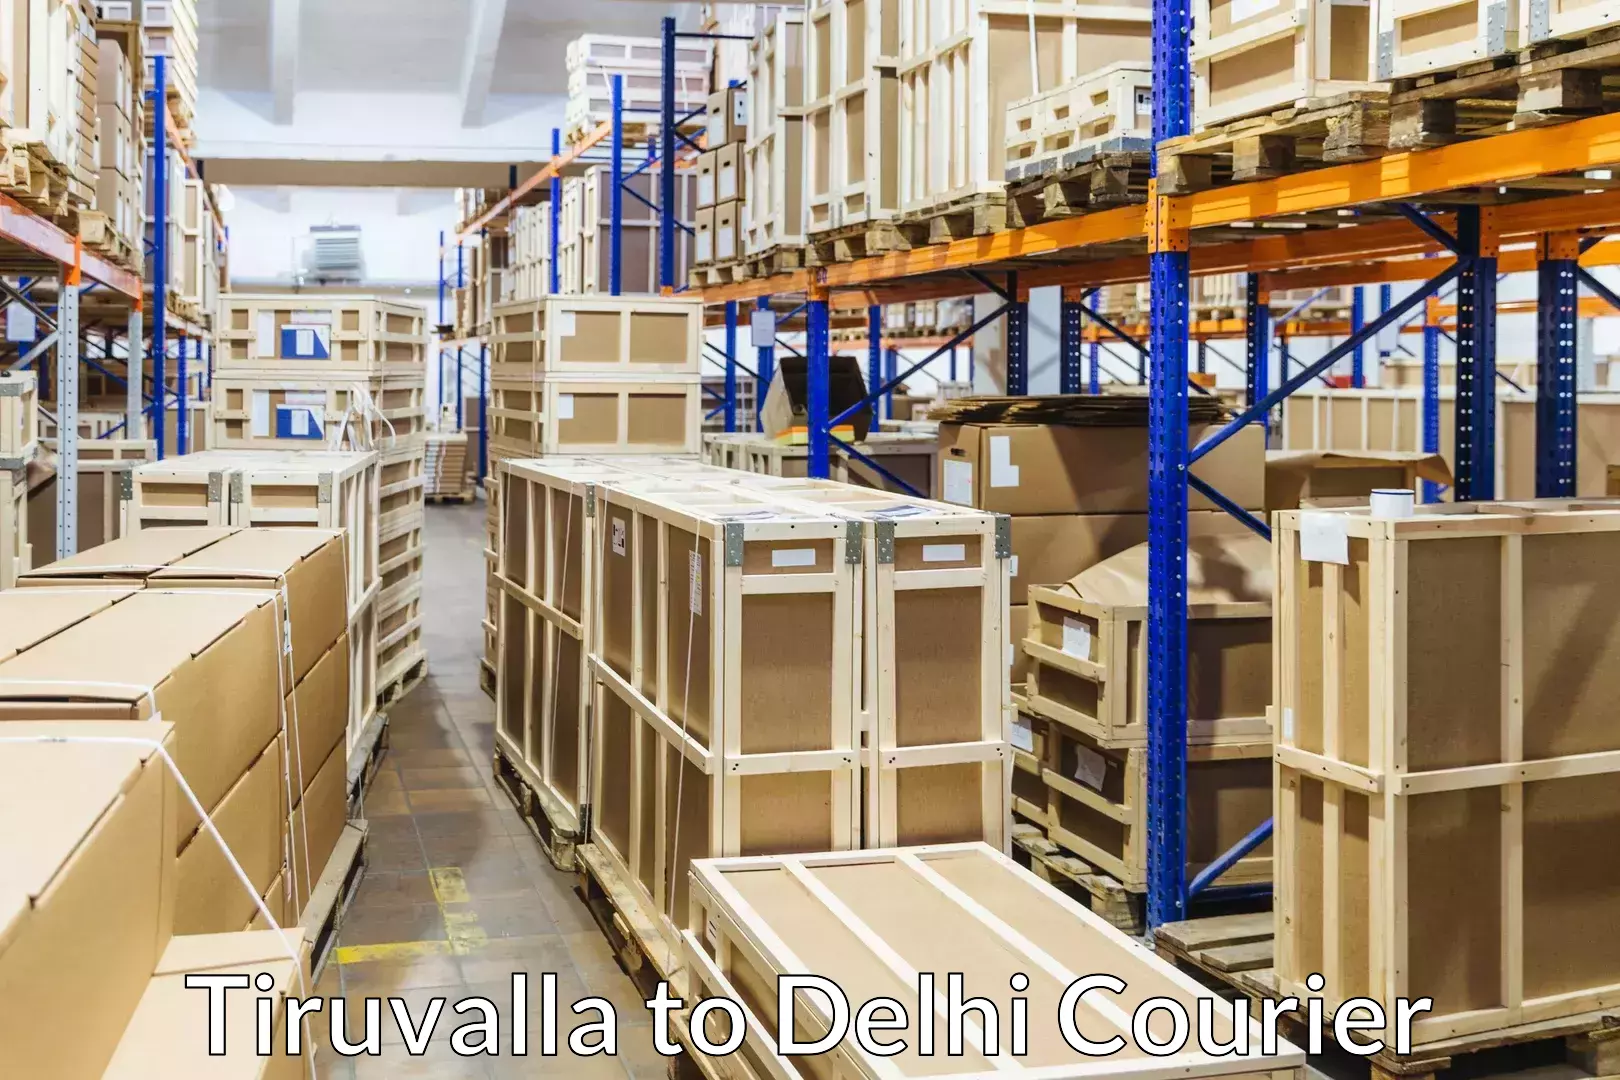 Furniture moving experts Tiruvalla to Delhi